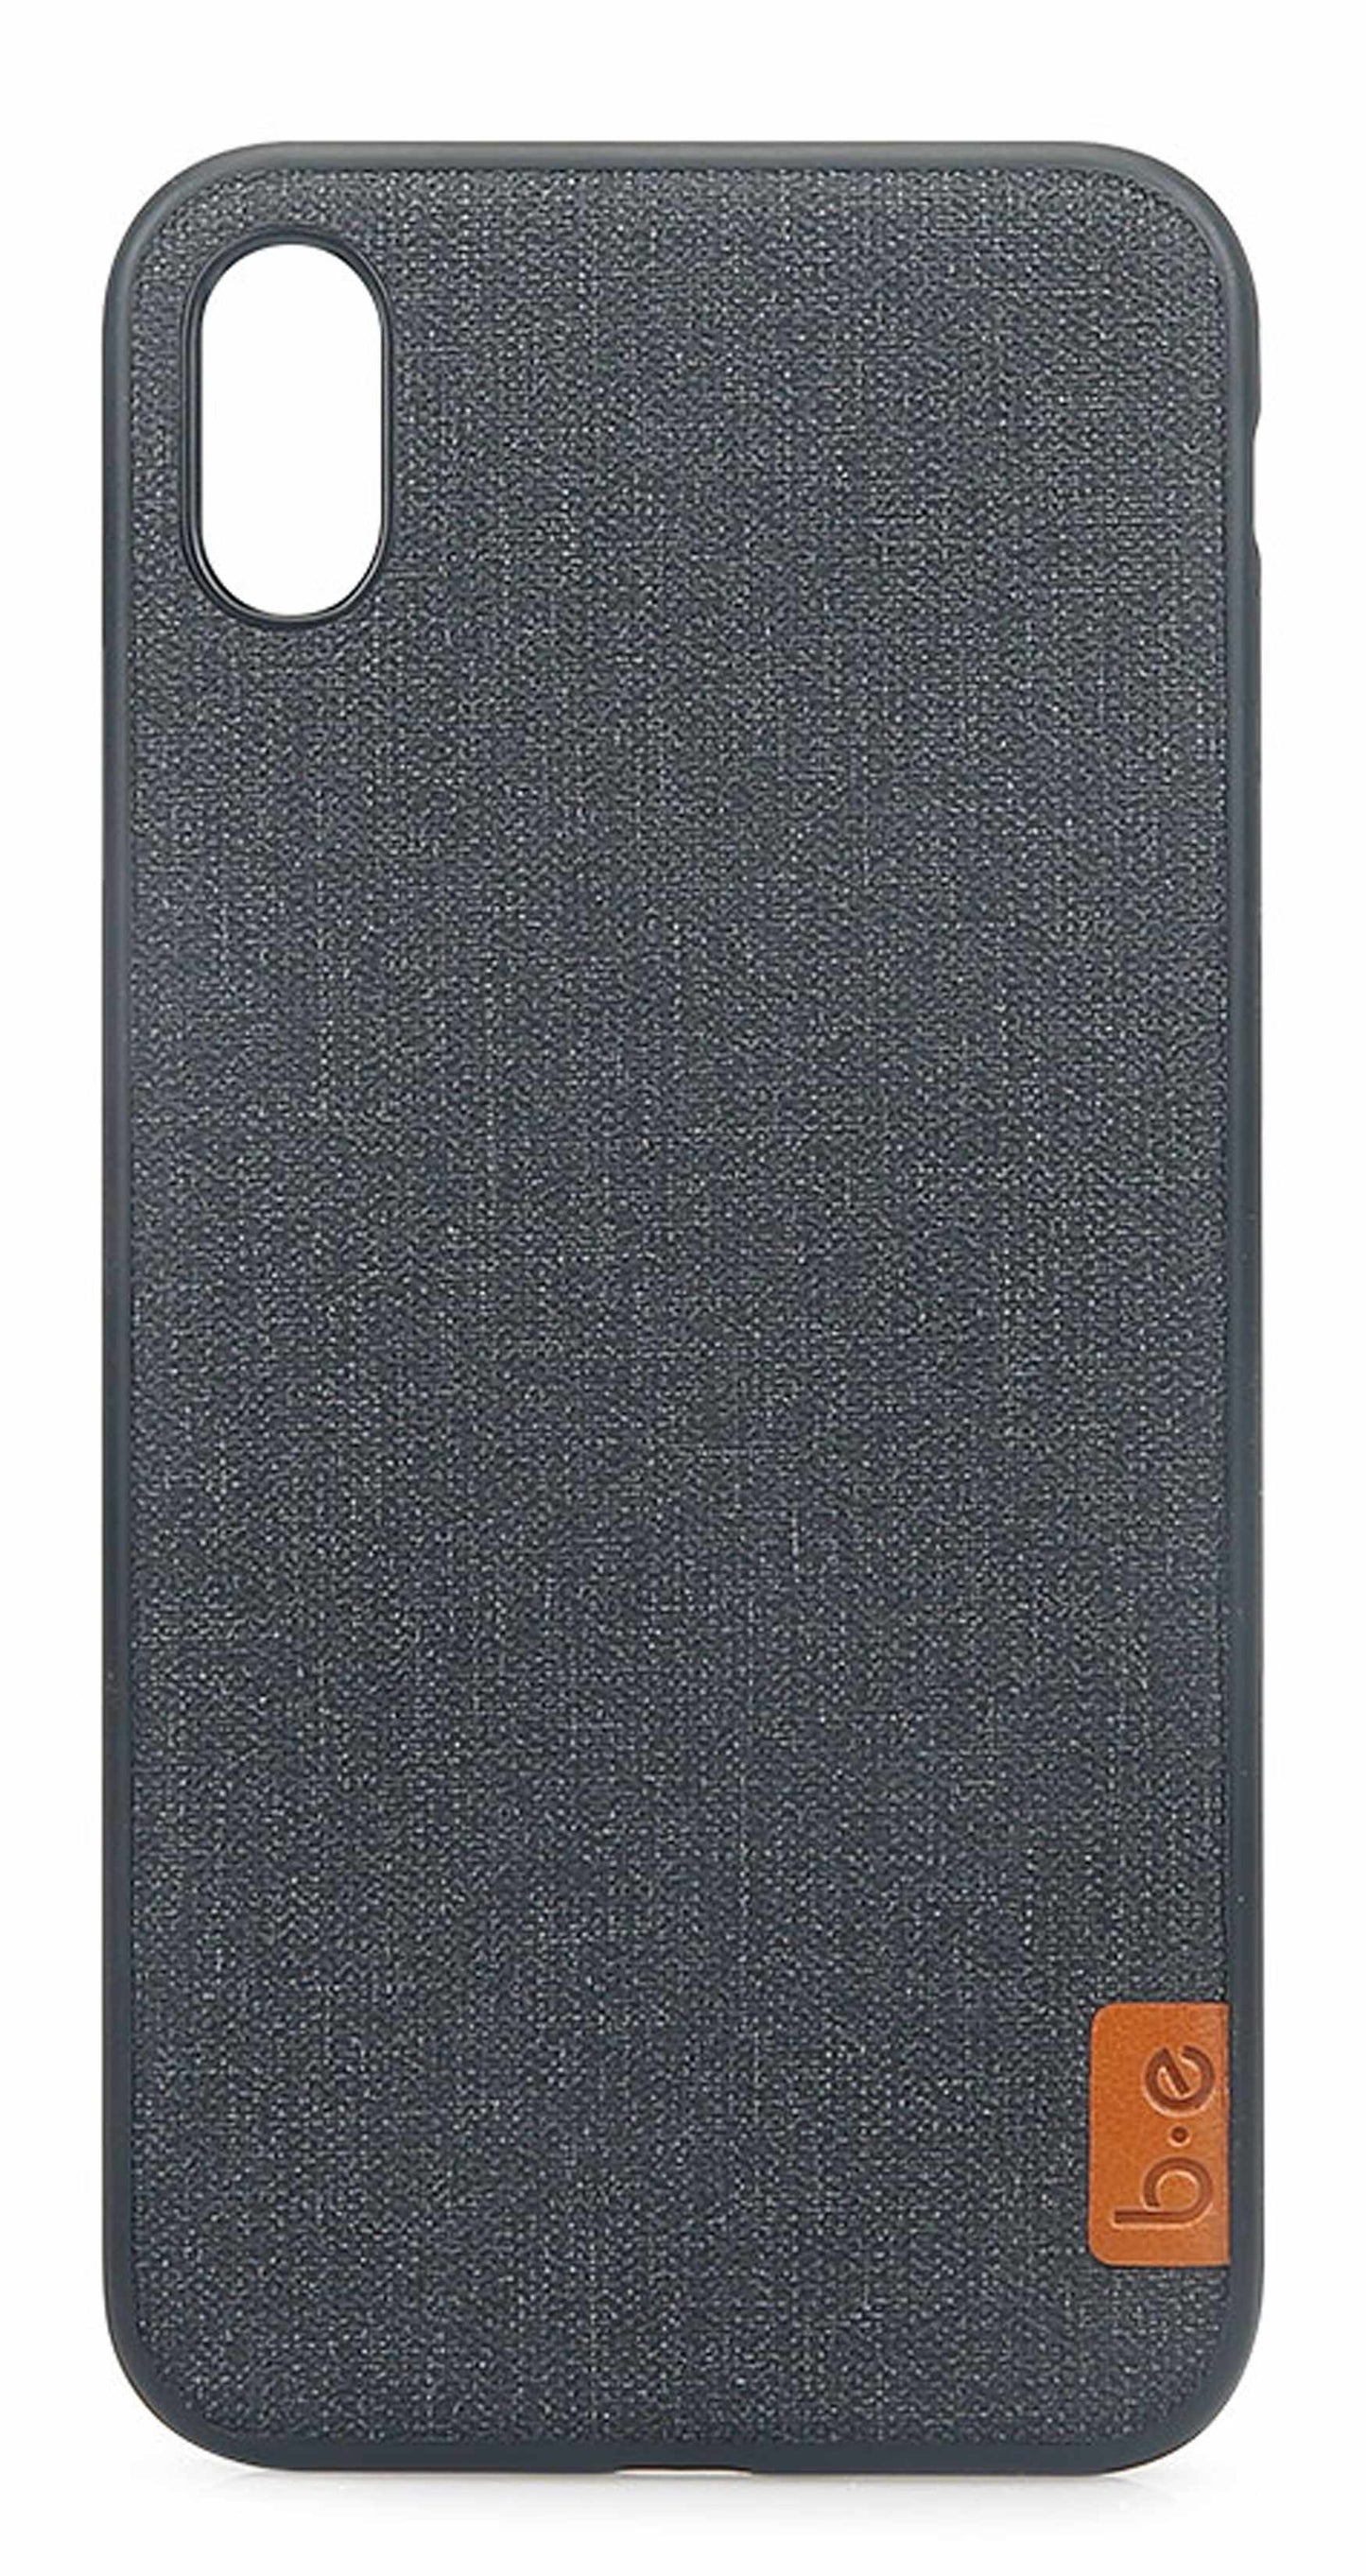 Blu Element - Chic Collection Case Dark Grey for iPhone XS/X - GekkoTech